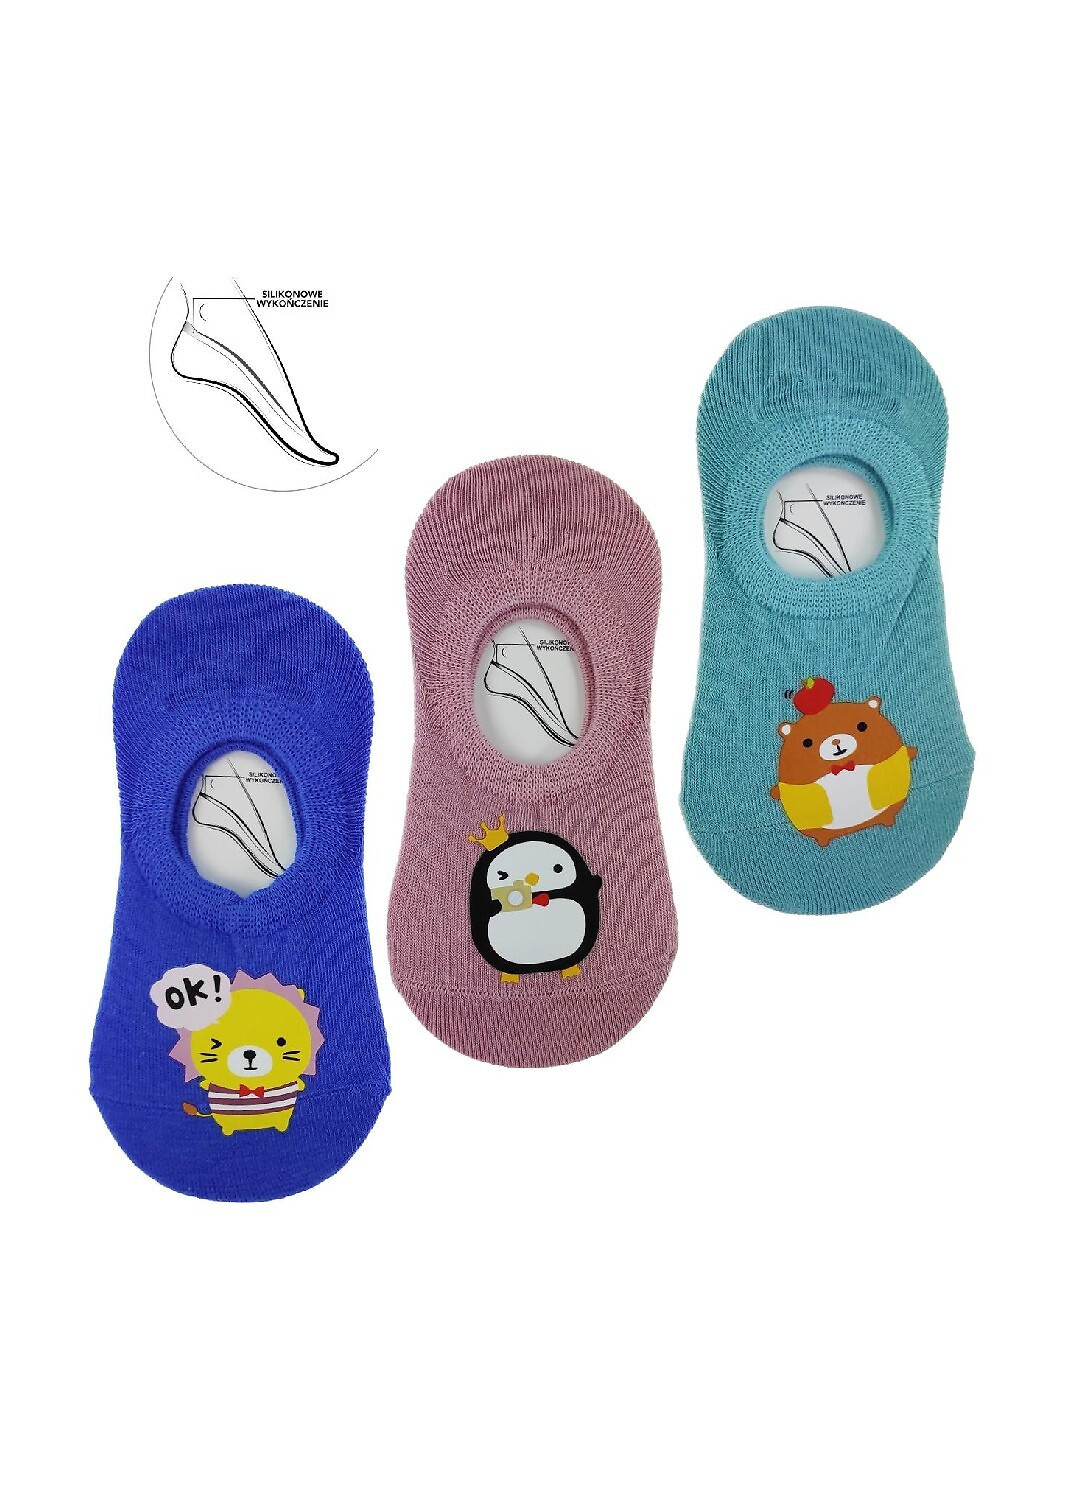 Dětské ponožky Moraj CDK 170-017 Zvířátka 23-34 směs barev 31-34